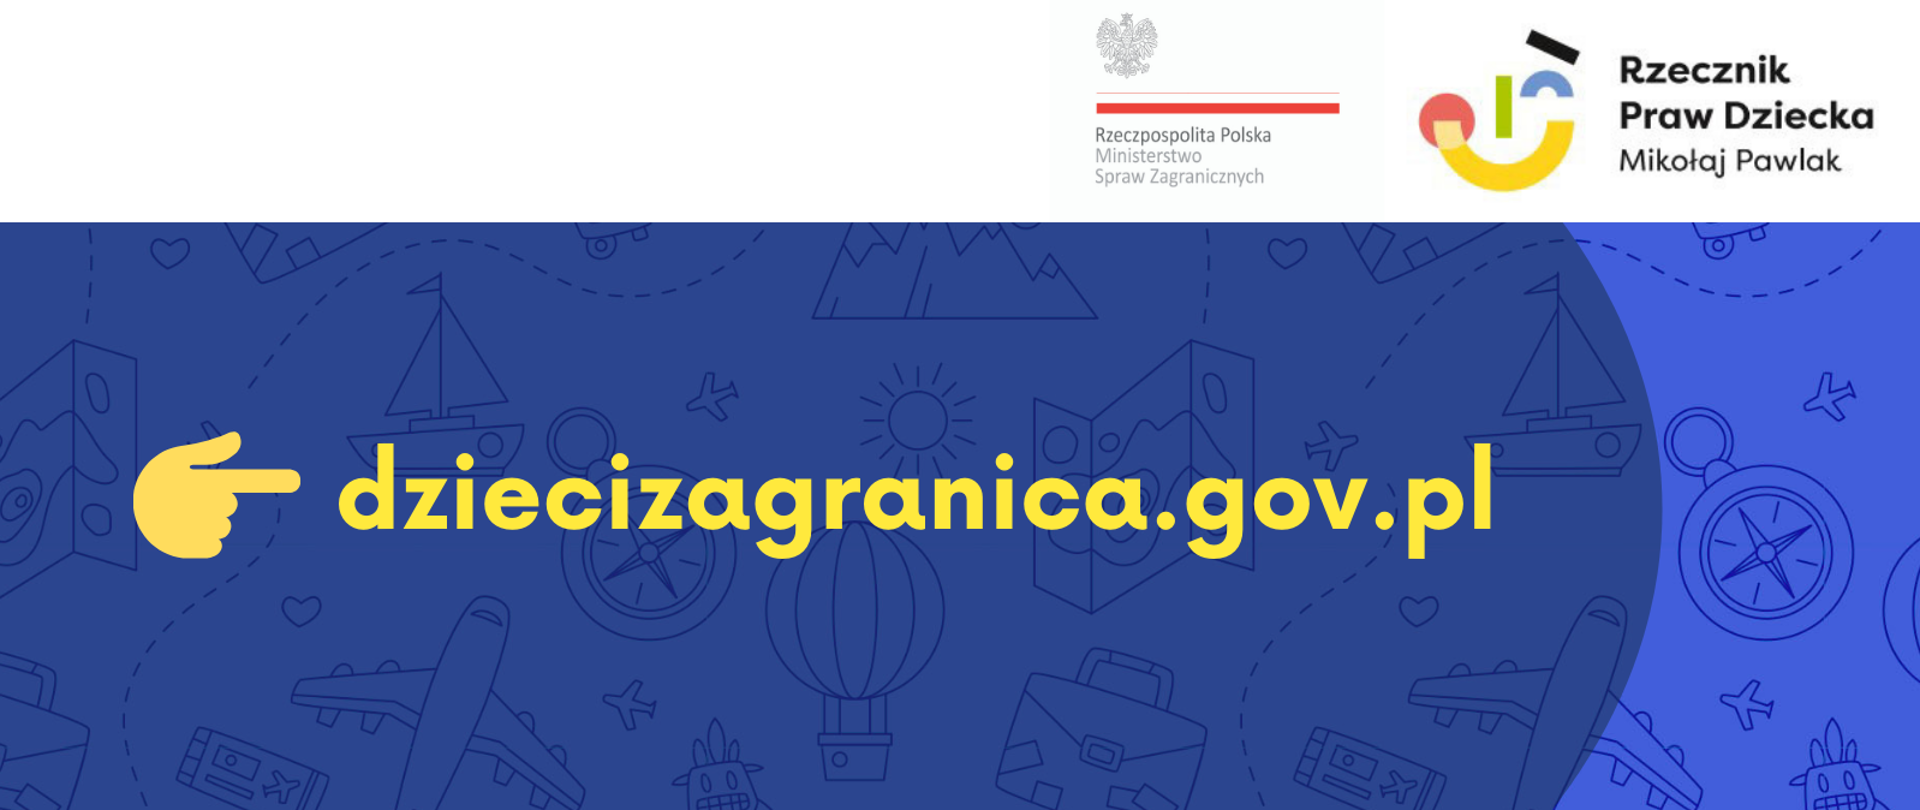 Сайт dziecizagranica.gov.pl уже работает